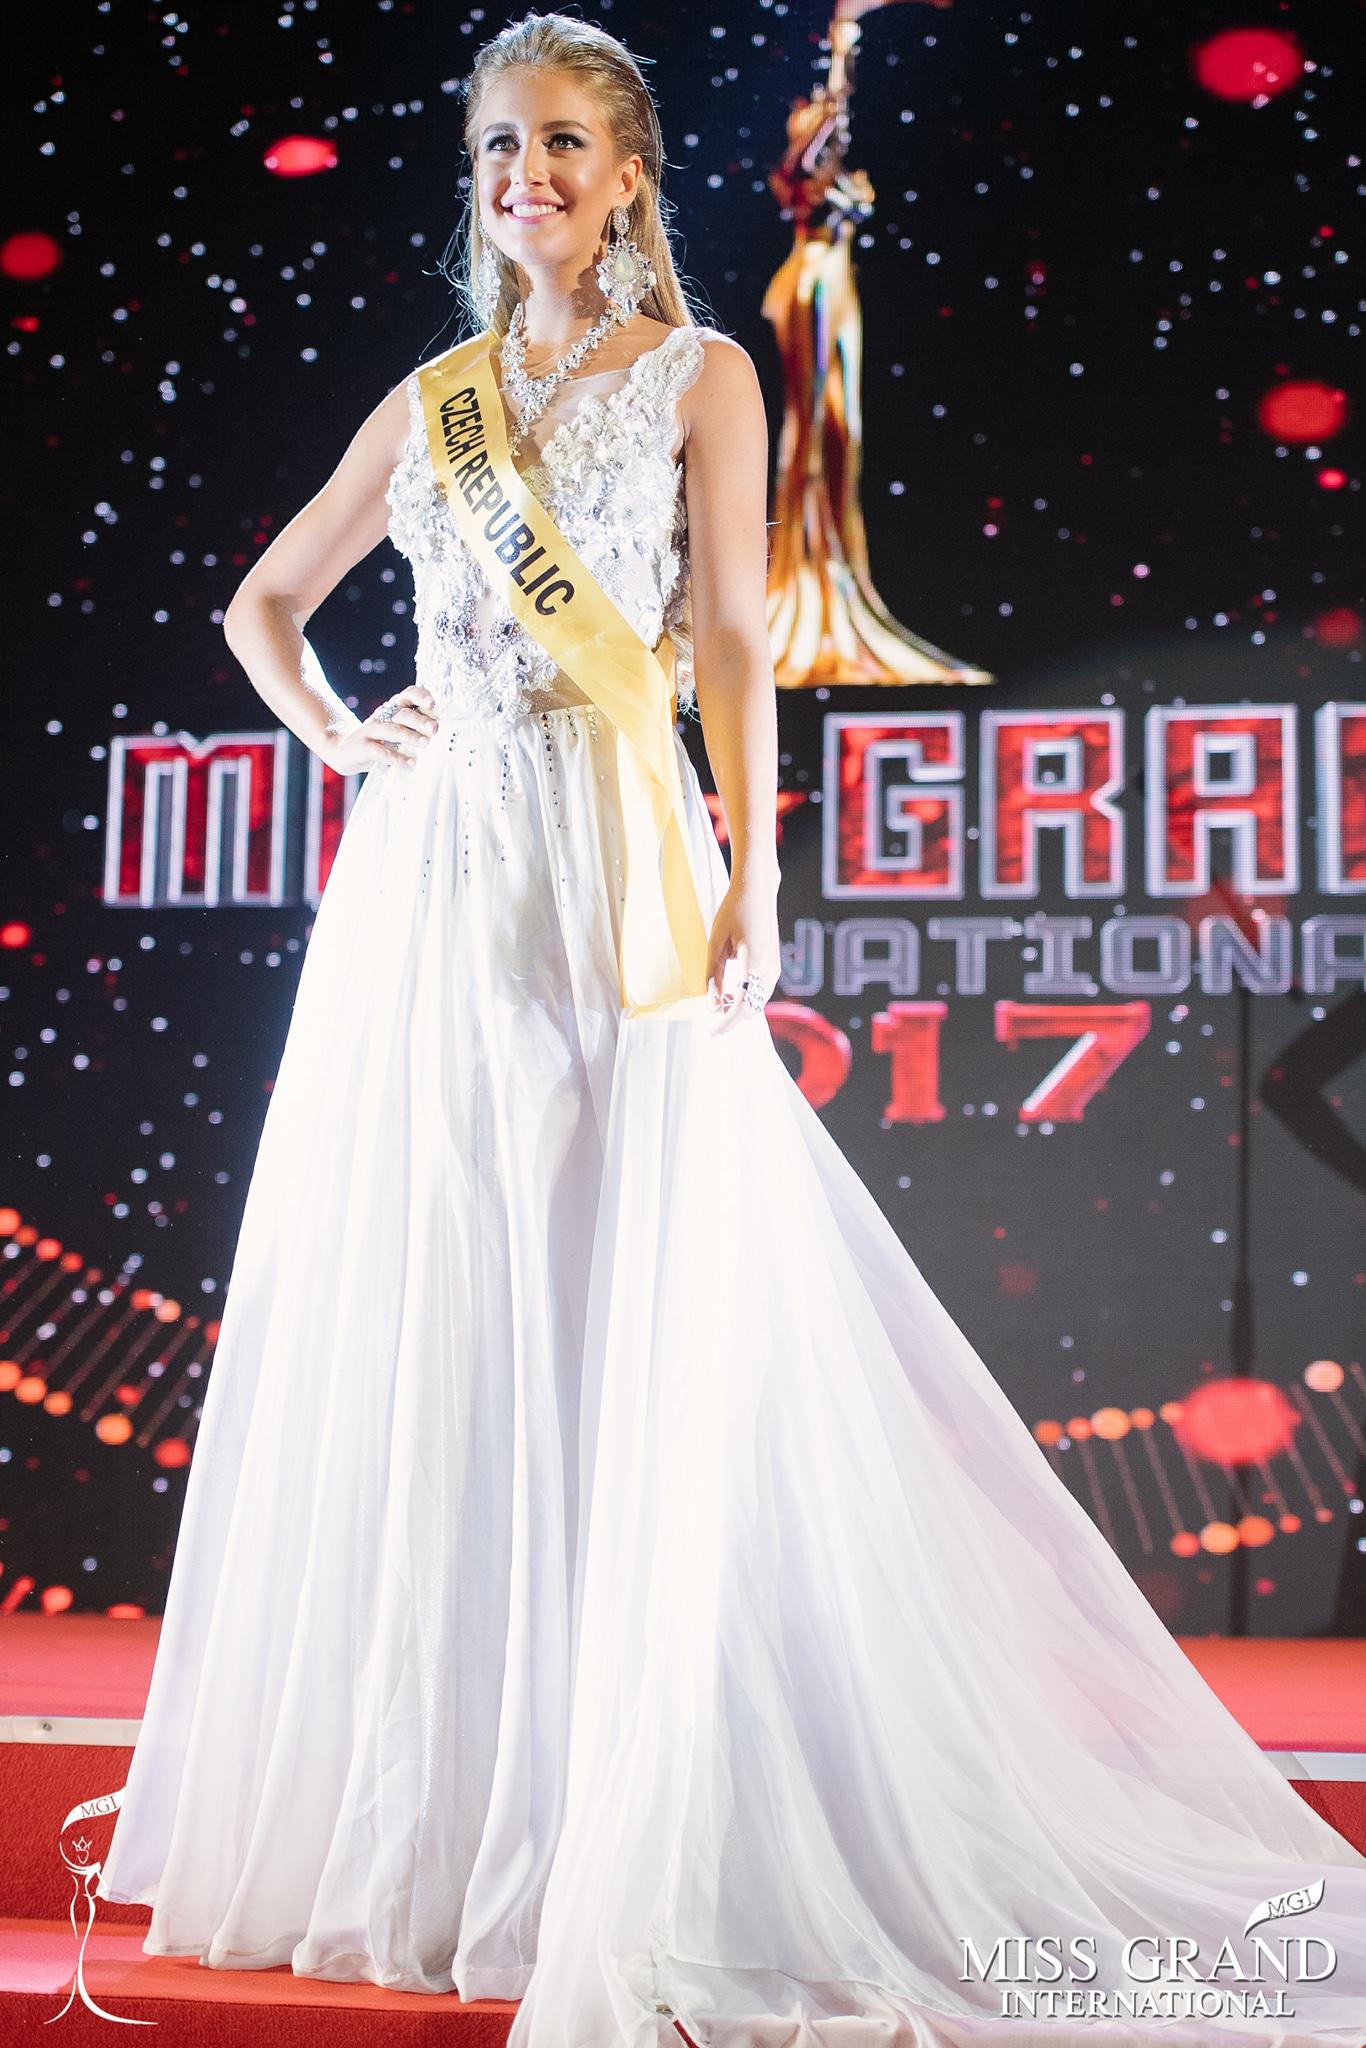 Huyền My trượt top 10 thí sinh được bình chọn nhiều nhất tại Miss Grand 2017-10